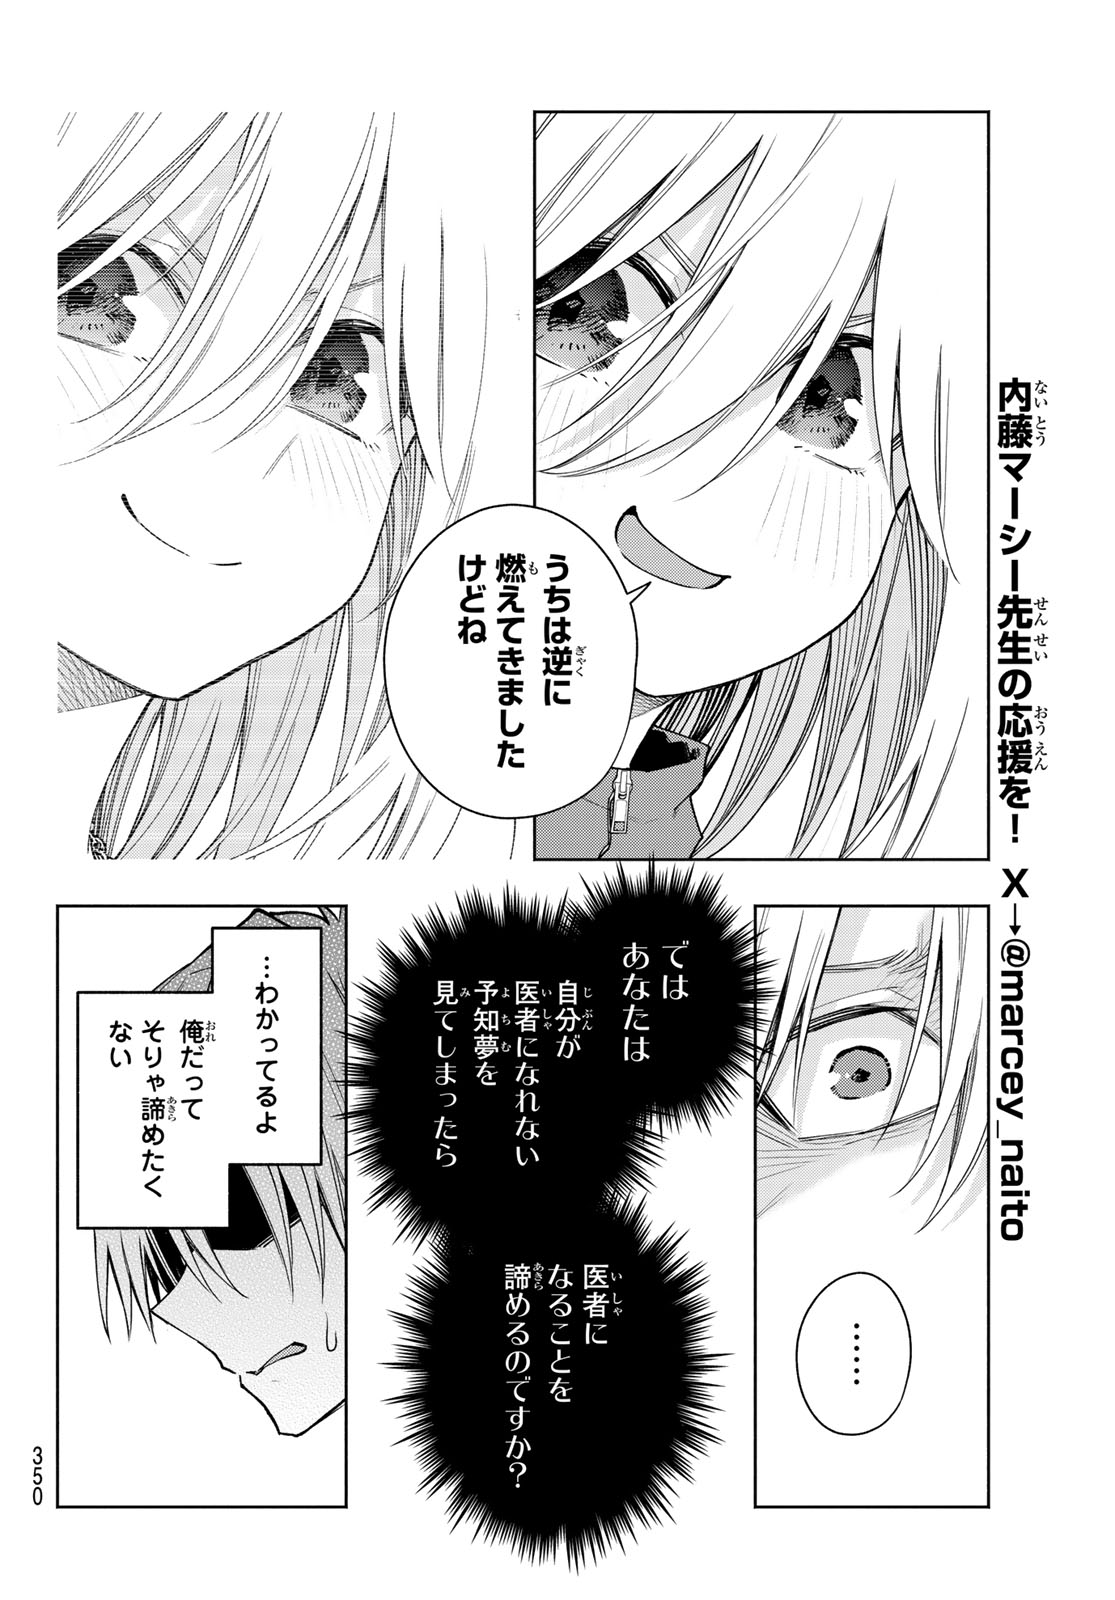 Amagami-san Chi no Enmusubi - Chapter 136 - Page 12